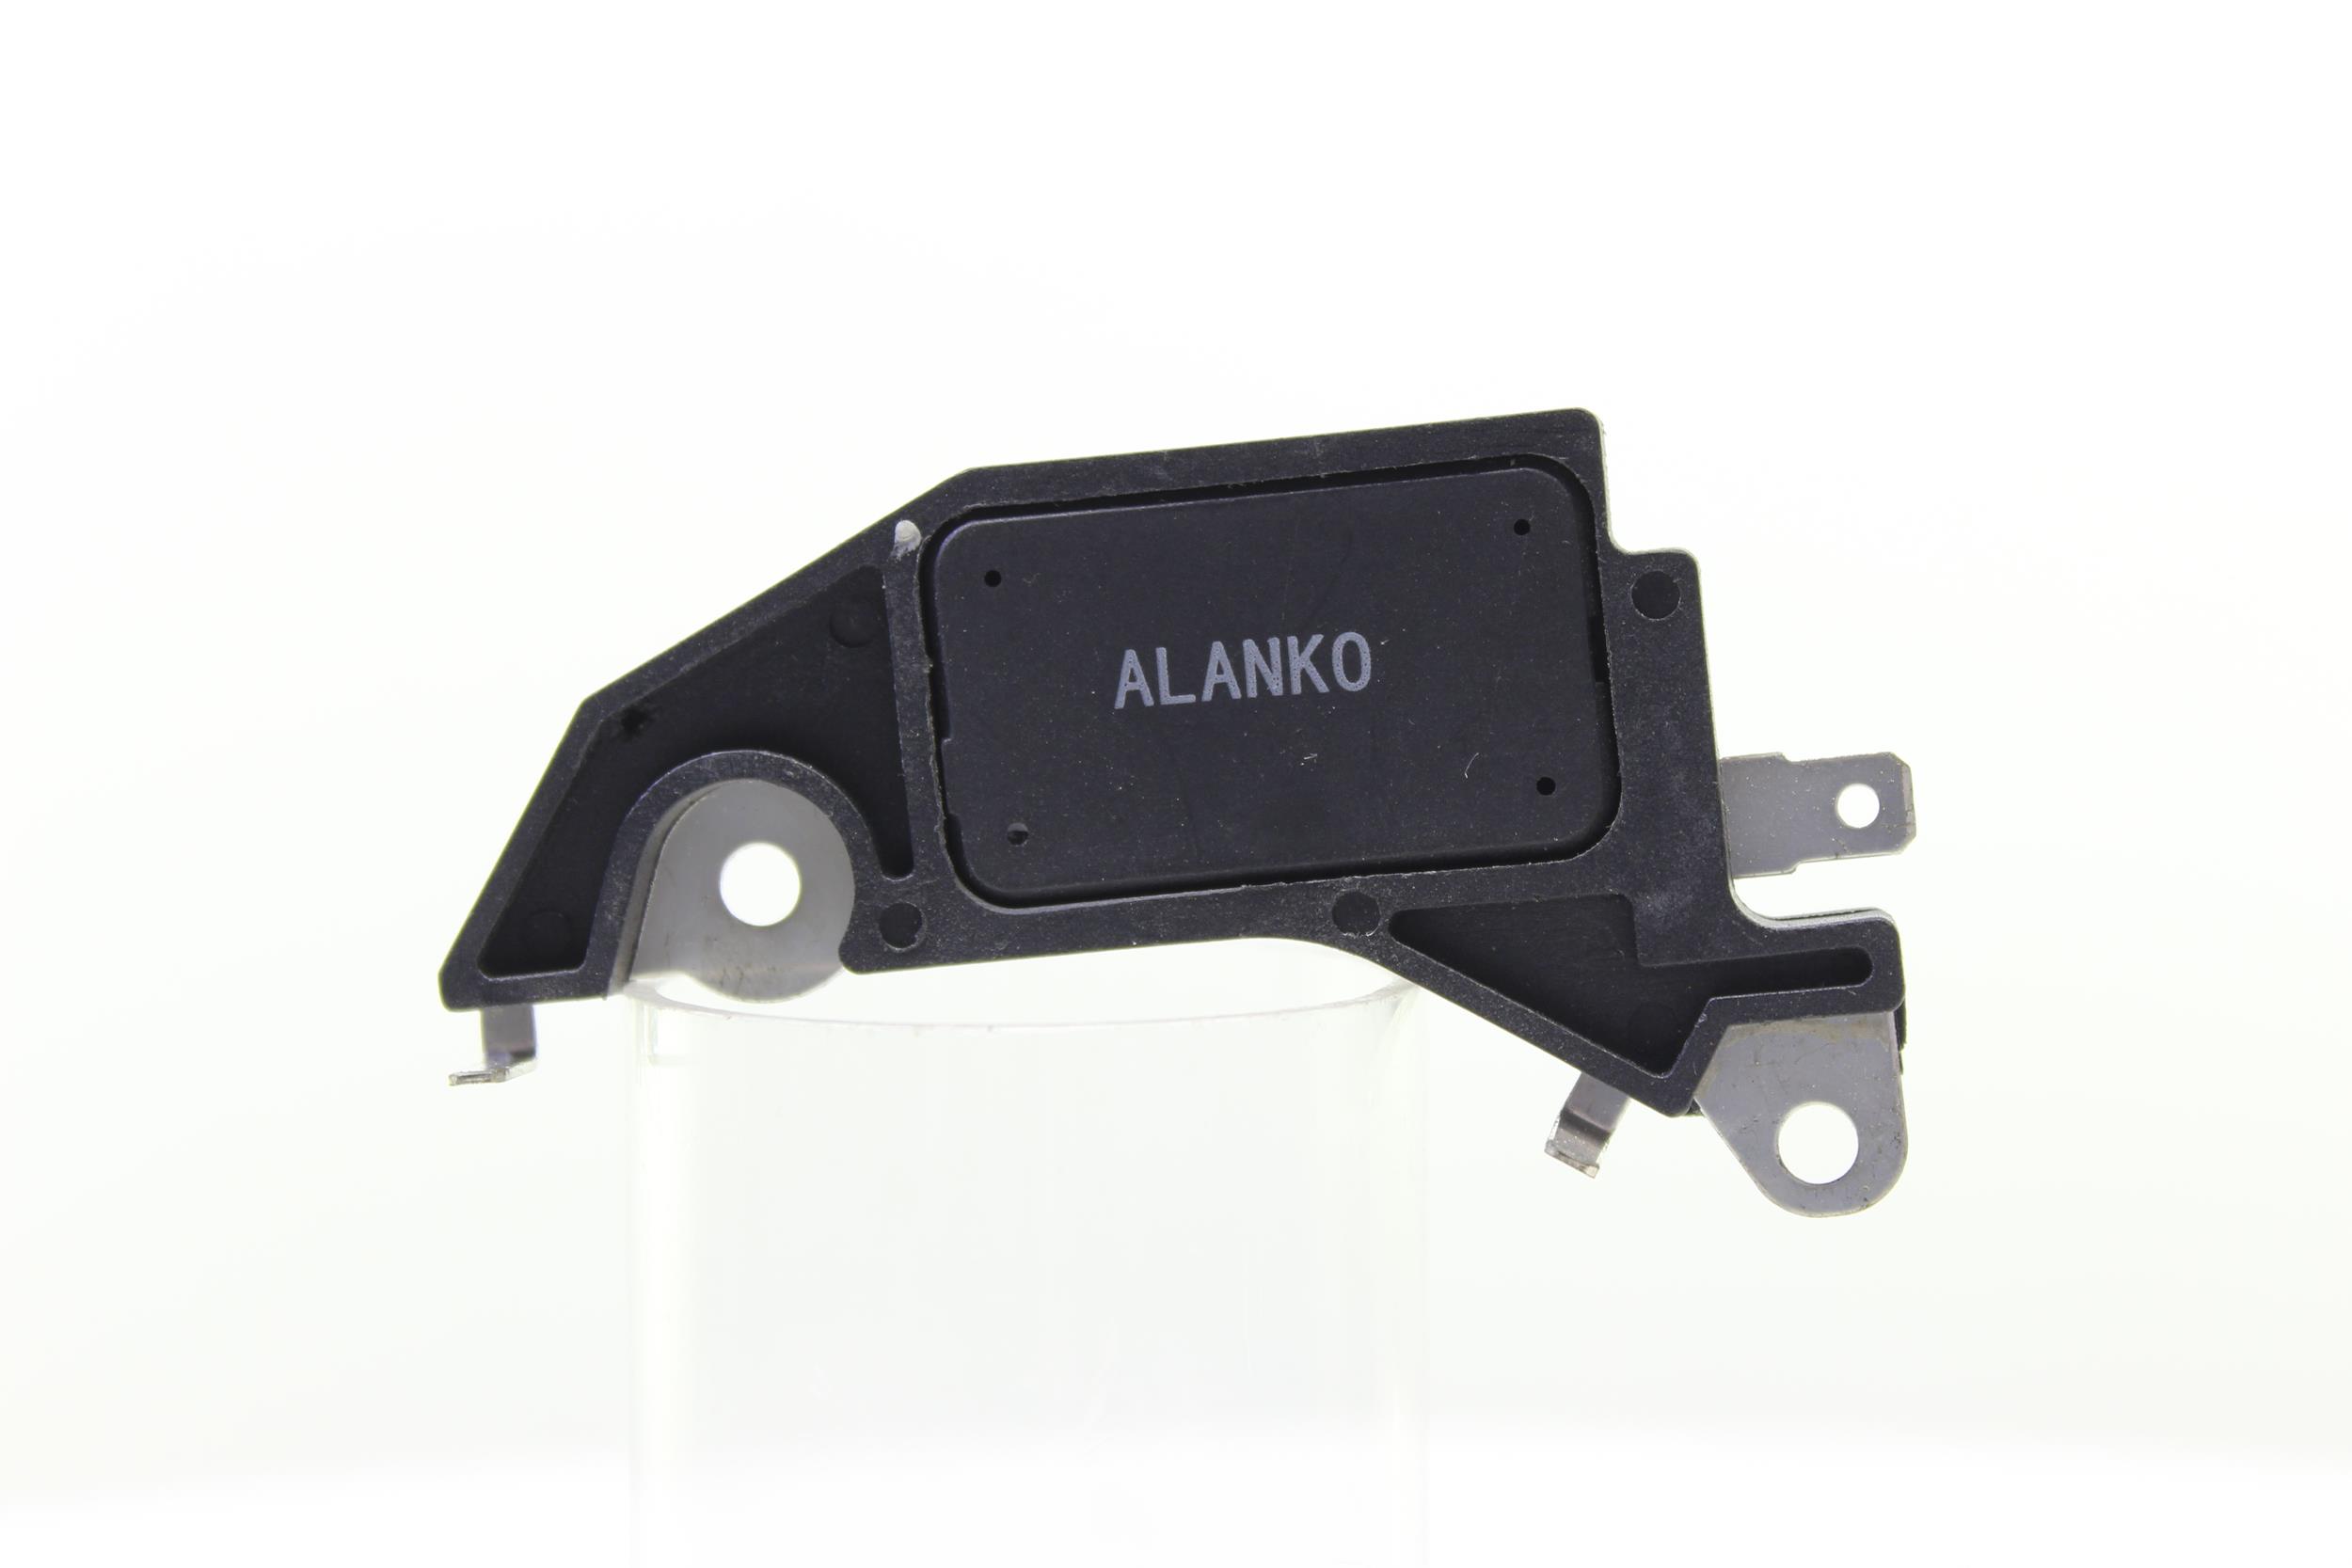 Original ALANKO 700035 Alternator voltage regulator 10700035 for OPEL ASTRA